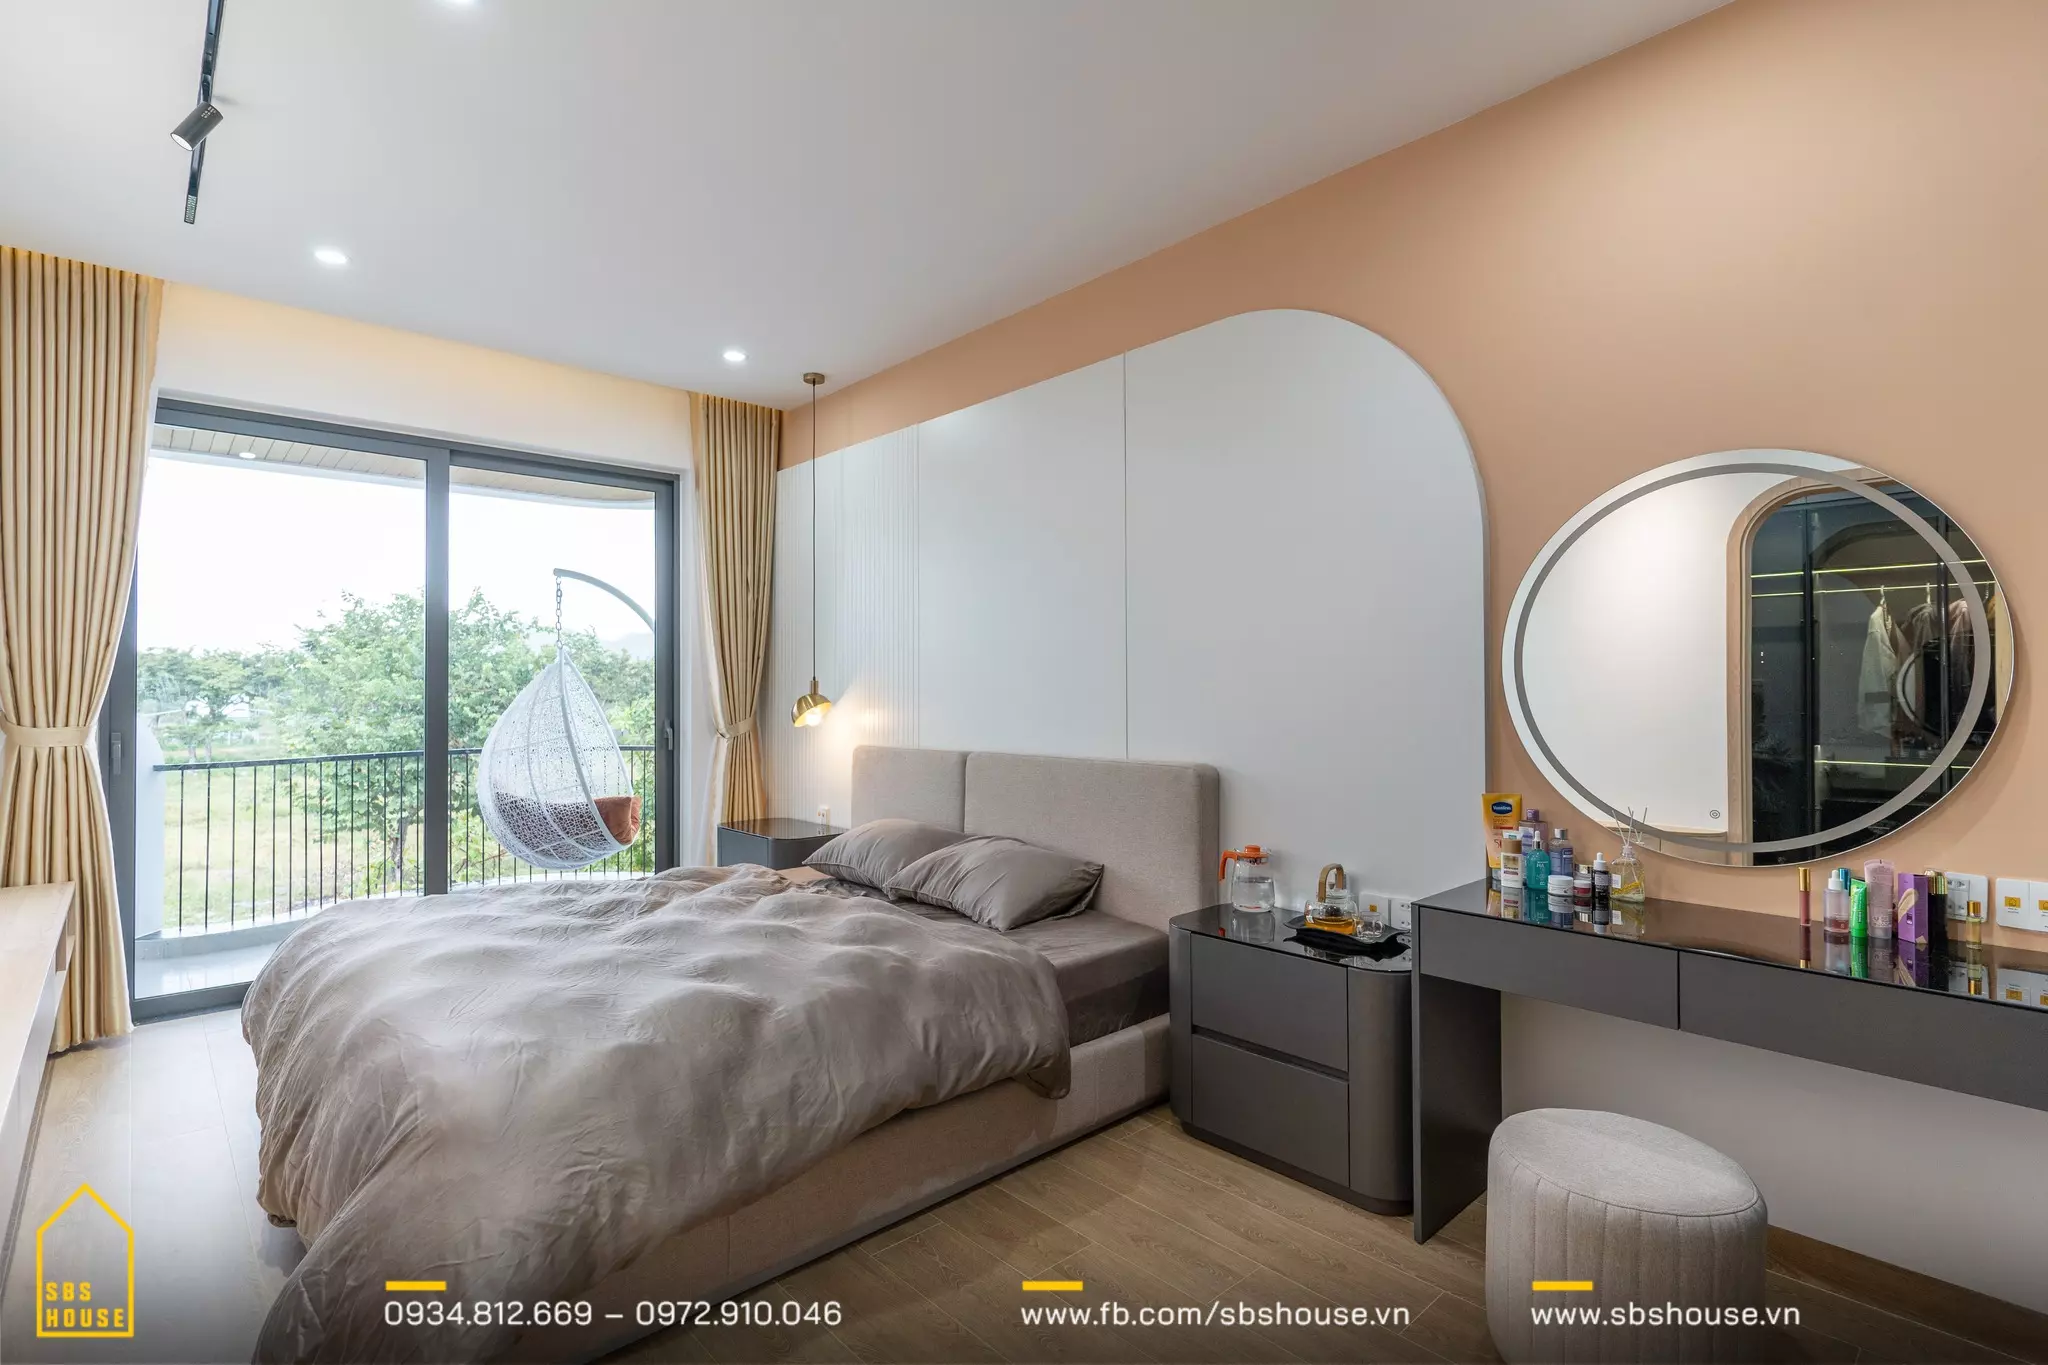 Phòng ngủ được thiết kế với tone màu thanh lịch và nội thất tối giản, tạo nên một không gian thư giãn đúng nghĩa. 